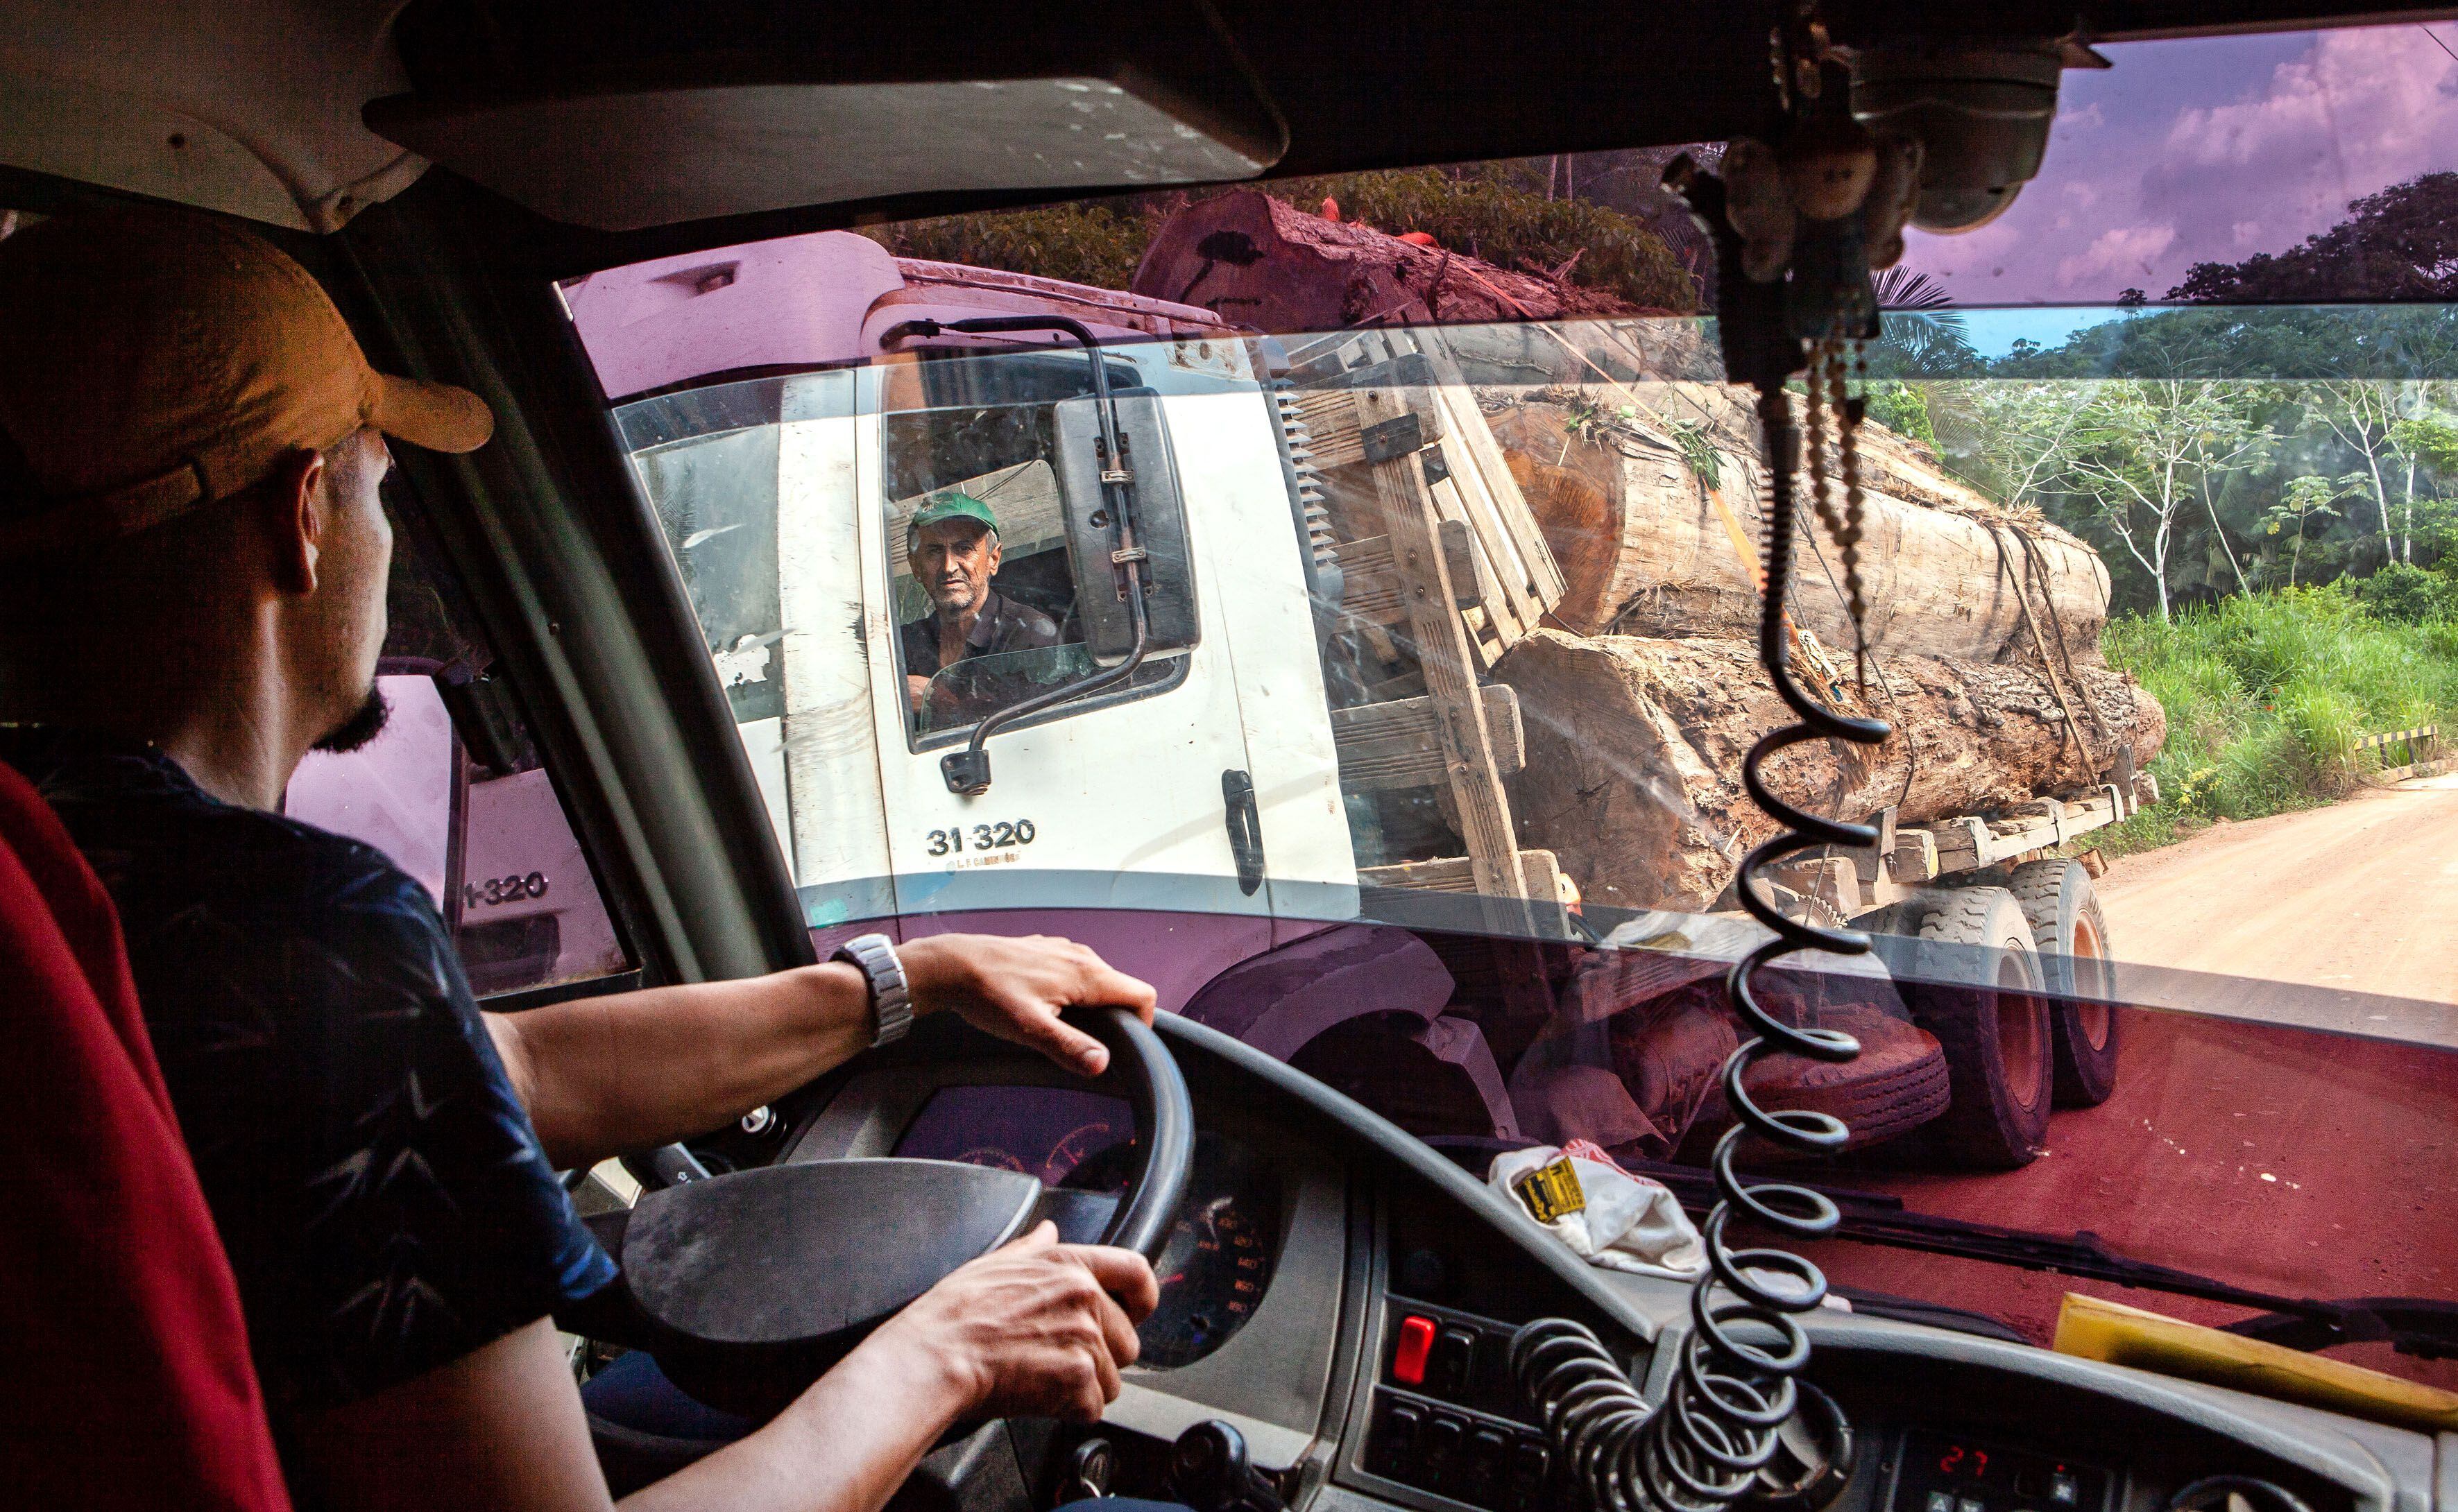 Os caminhões com toras são corriqueiros na Transamazônica e estradas vicinais, a maioria deles vindos da Terra Indígena Cachoeira Seca, uma das mais invadidas e desmatadas do Brasil.